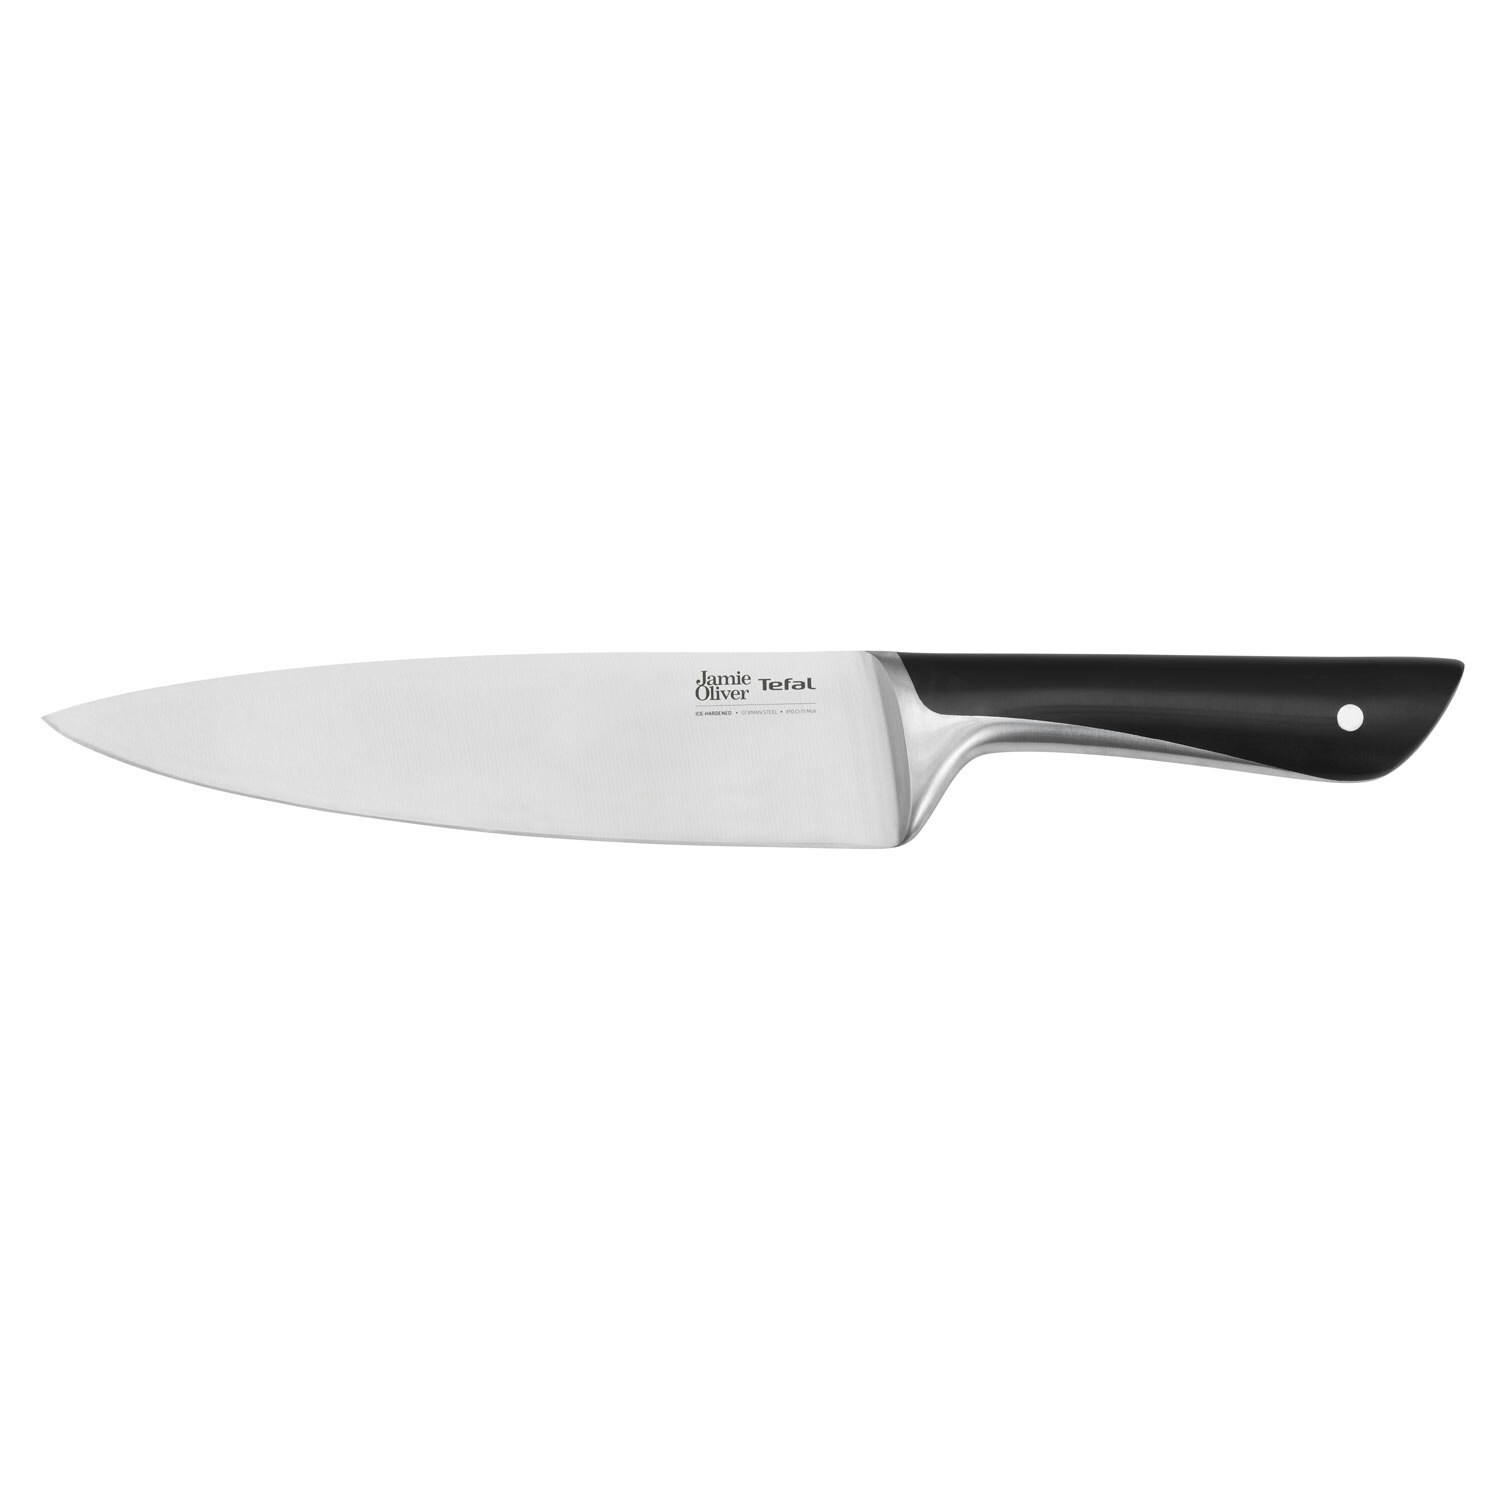 https://royaldesign.com/image/2/tefal-jamie-oliver-chef-knife-20-cm-0